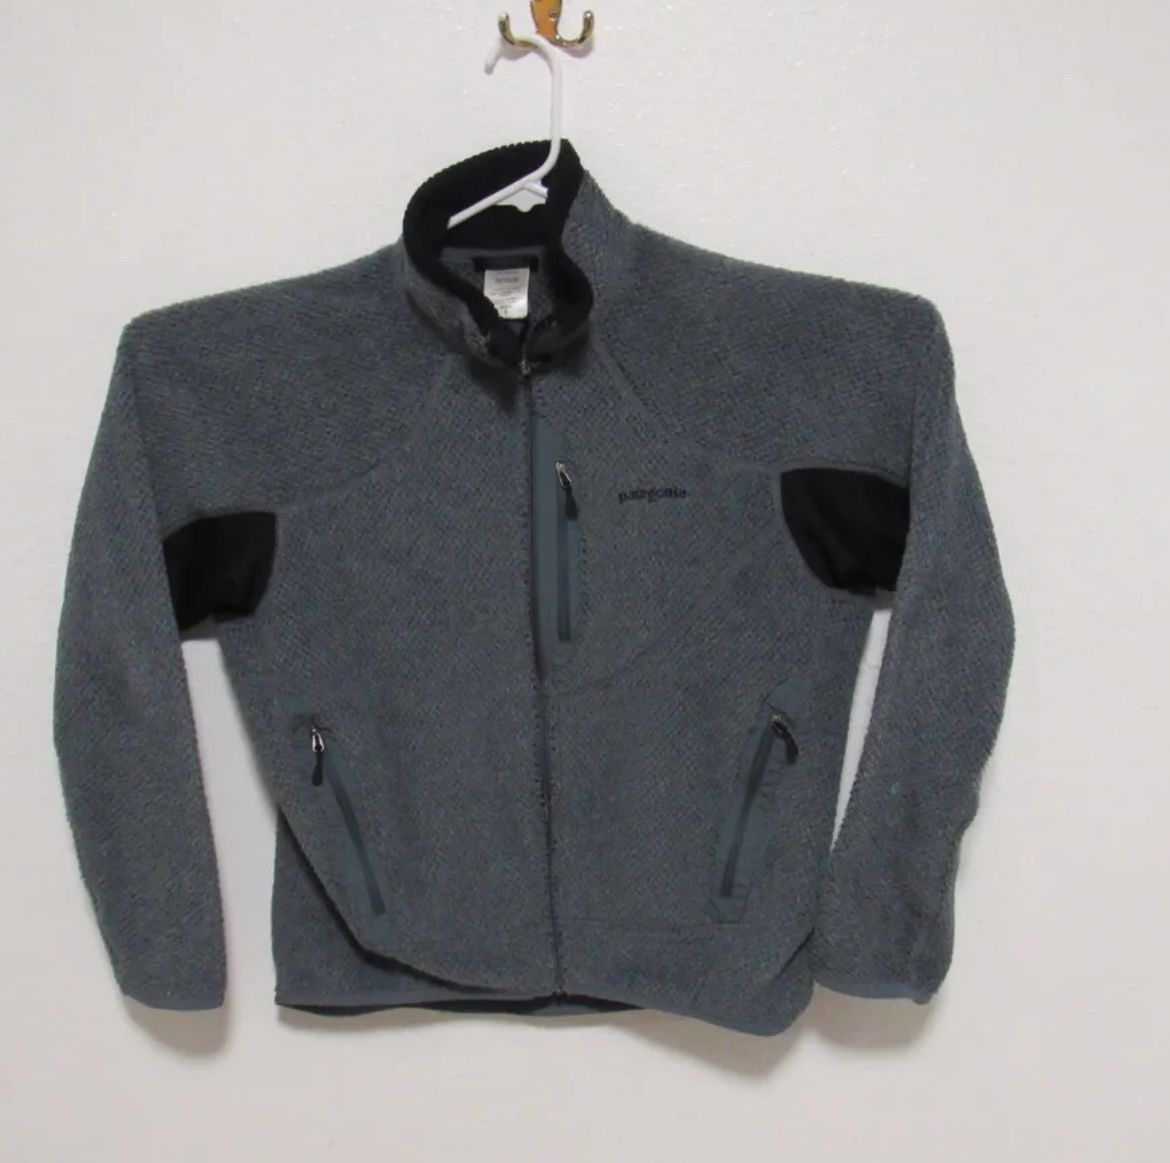 Patagonia Gray Fleece Full Zip Polartec Jacket Men's size Small Outdoor Coat